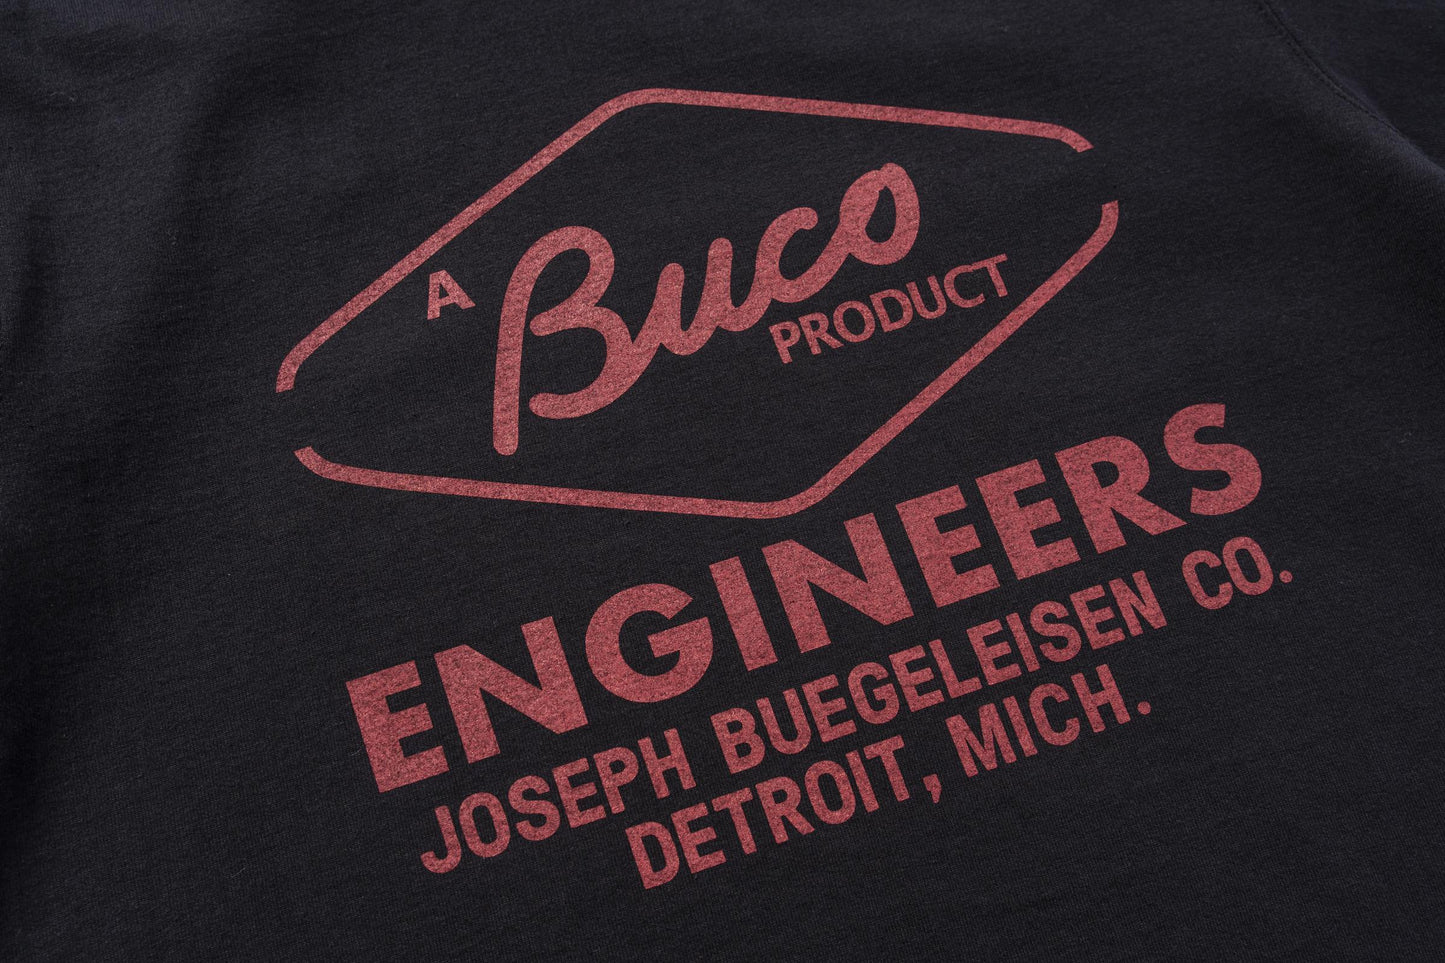 BUCO TEE / ENGINEERS